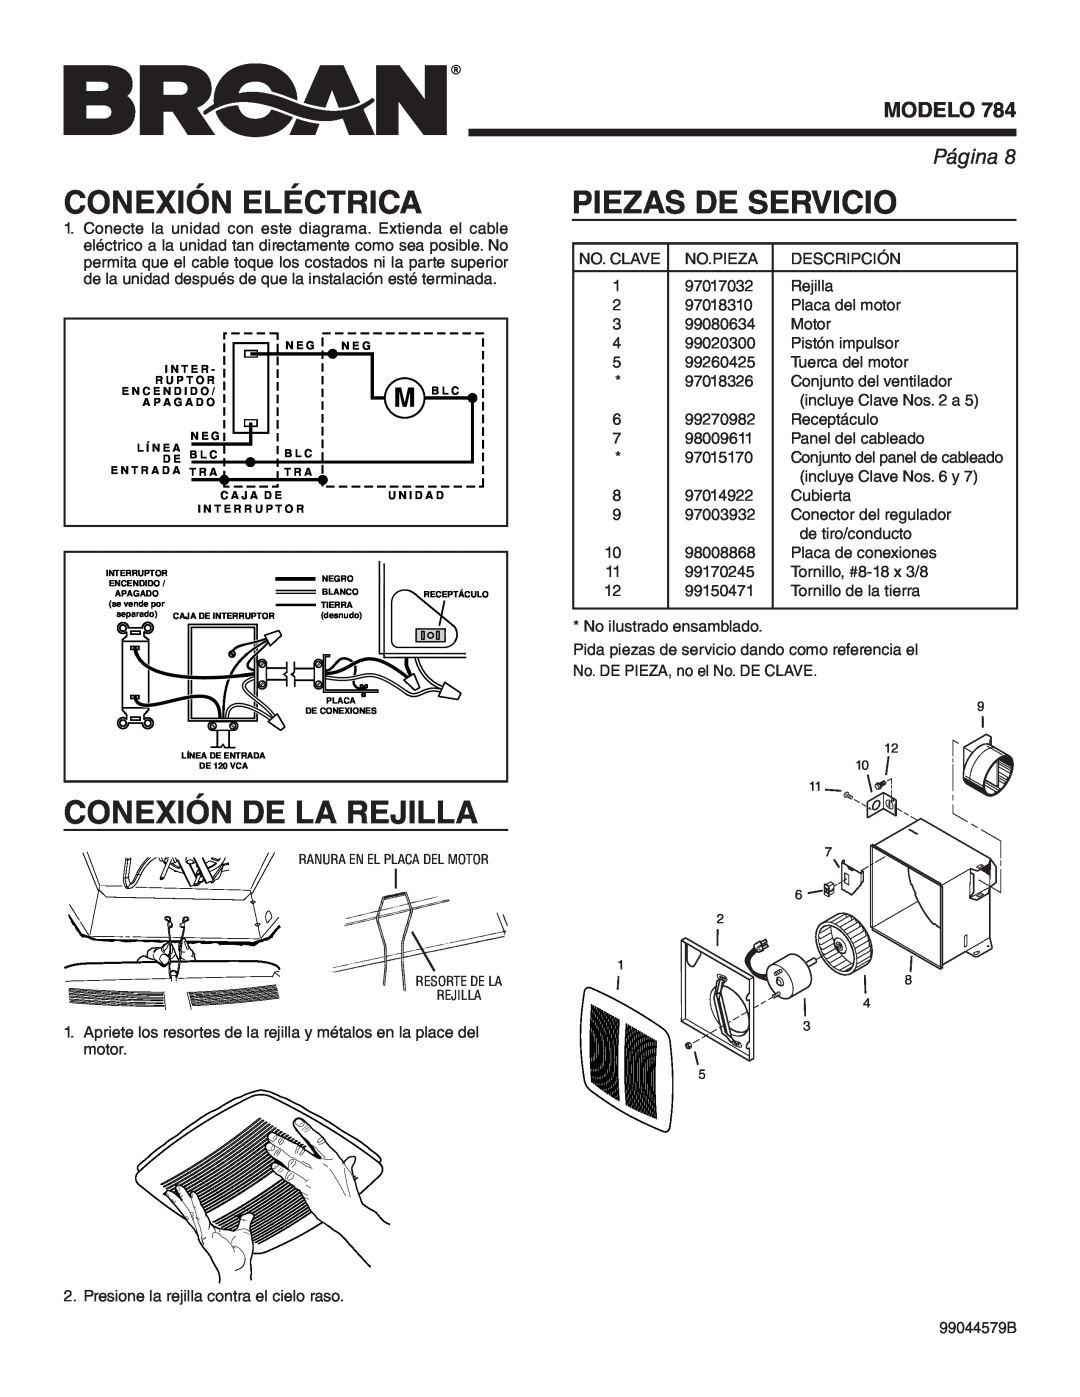 Broan 784 manual Conexión Eléctrica, Conexión De La Rejilla, Piezas De Servicio, Modelo, Página 